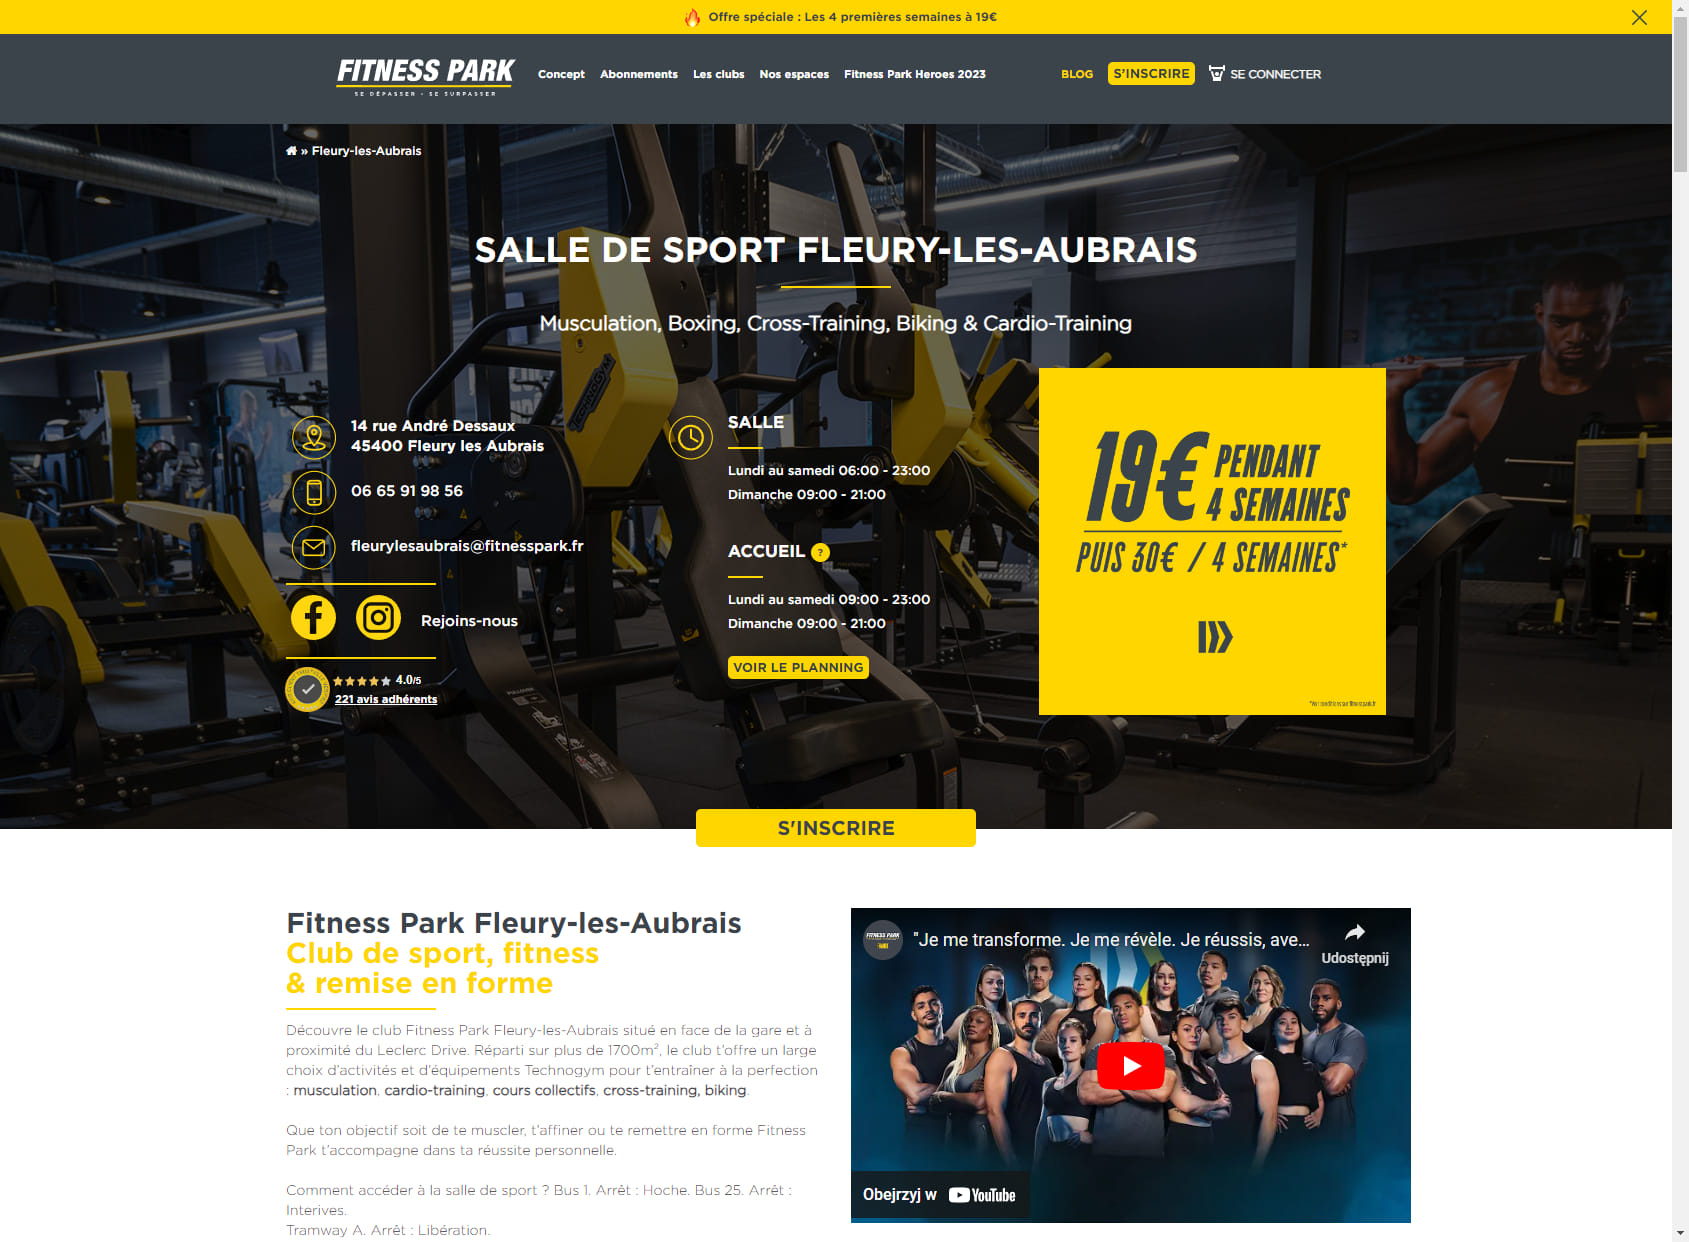 Salle de sport Fleury-les-Aubrais - Fitness Park